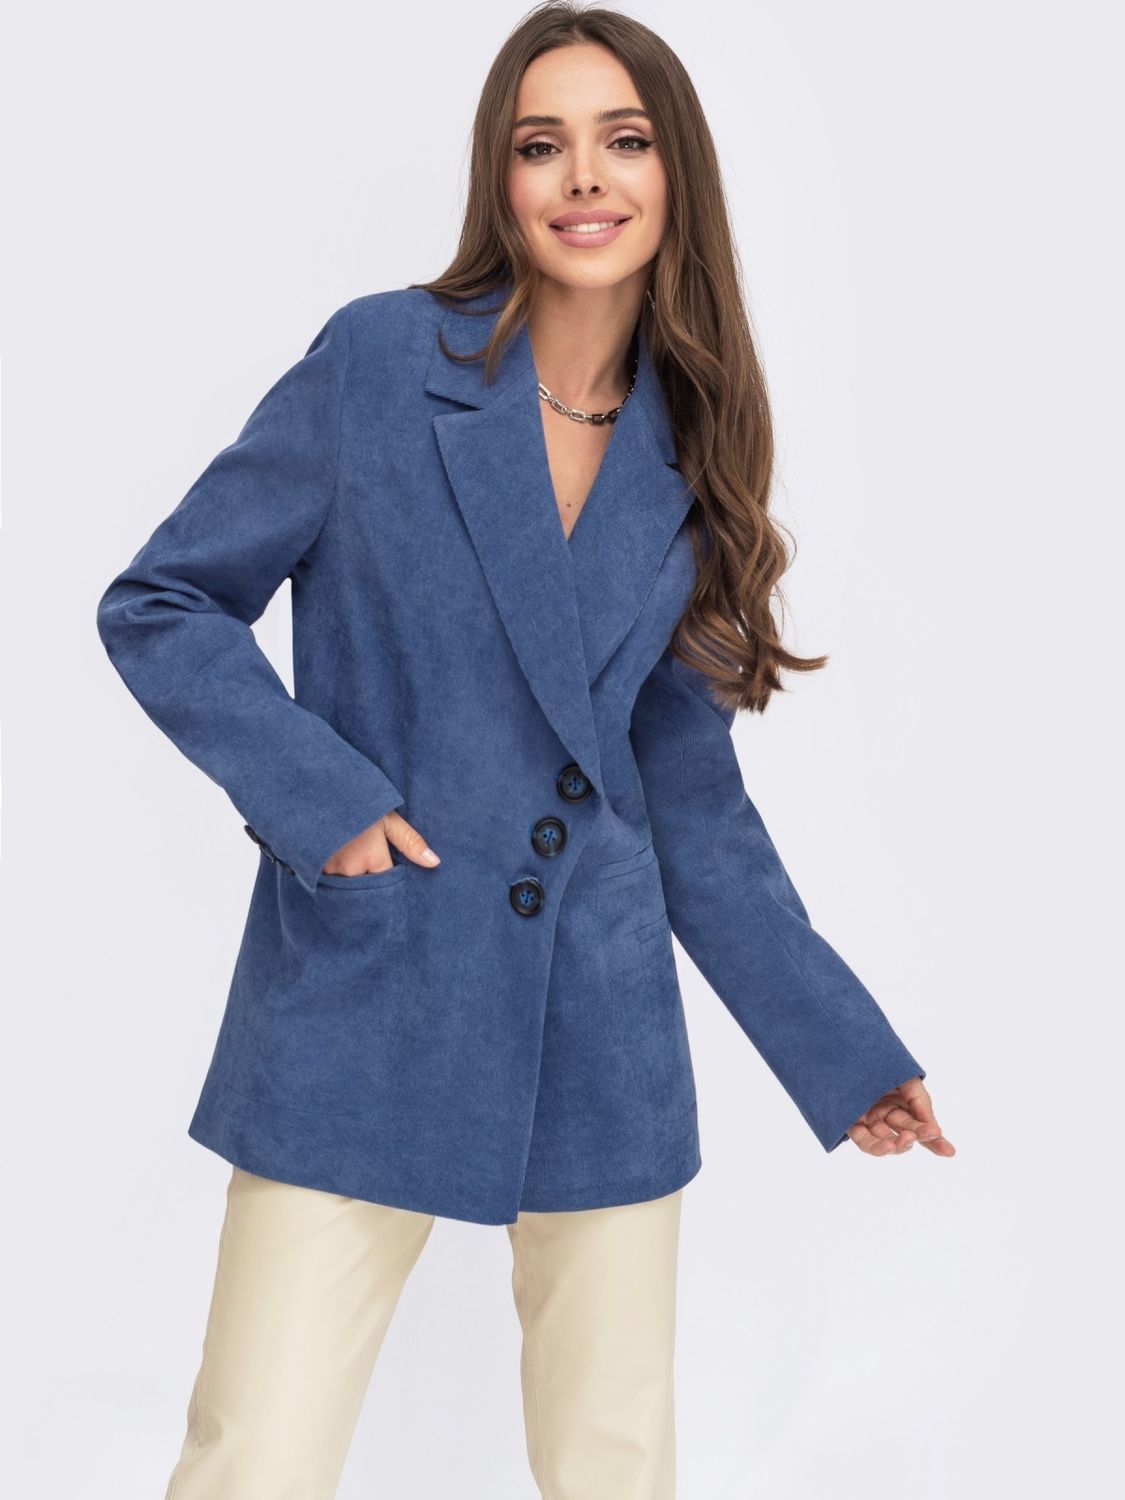 Жіночий вельветовий піджак синього кольору - фото